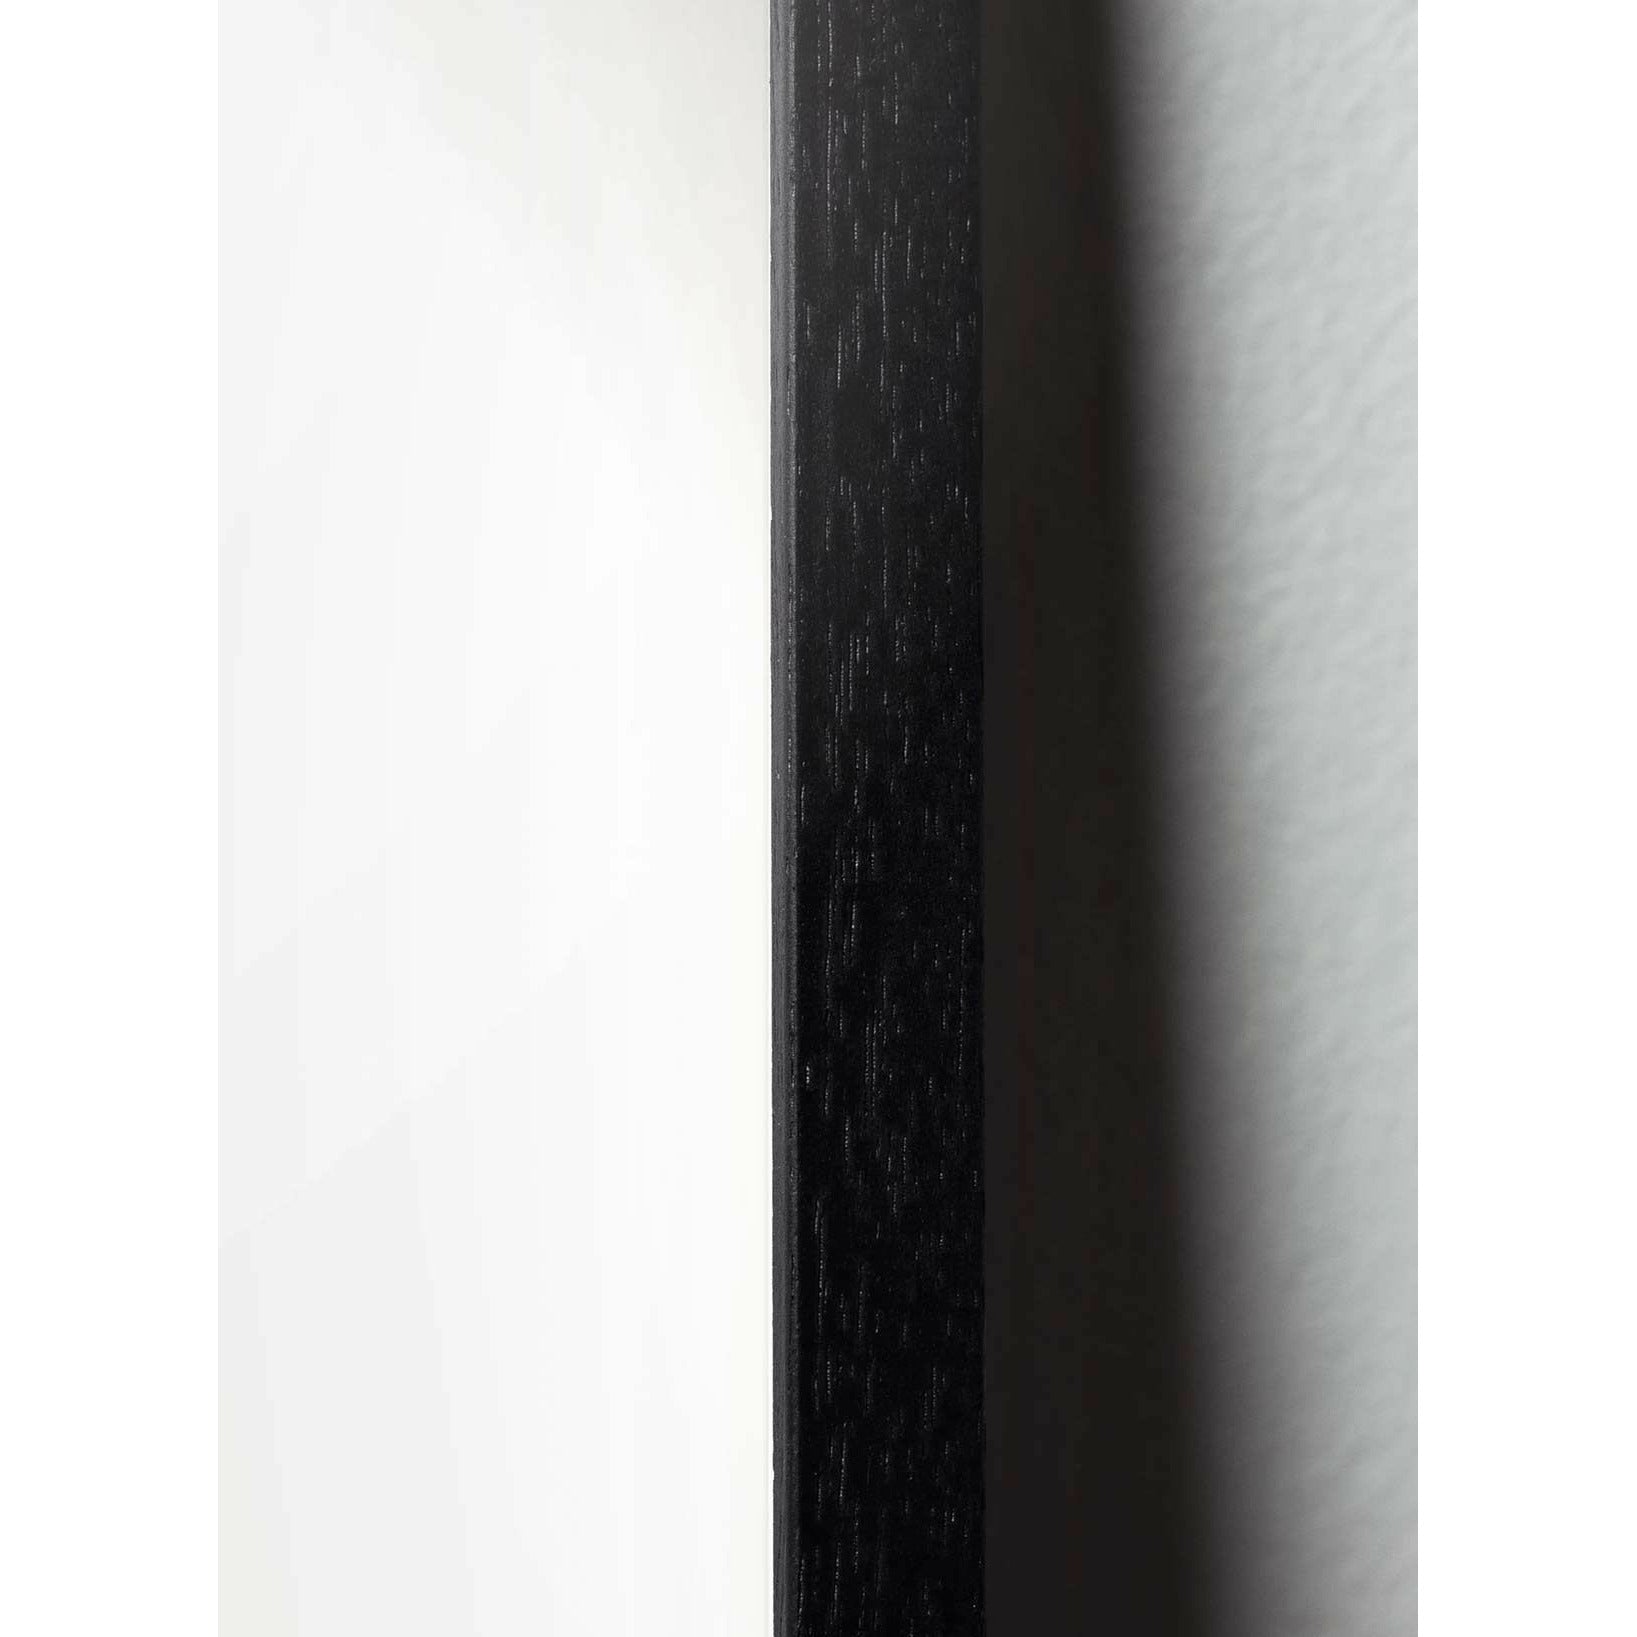 Brainchild Affiche de parade de cygne, cadre en bois laqué noir, 70x100 cm